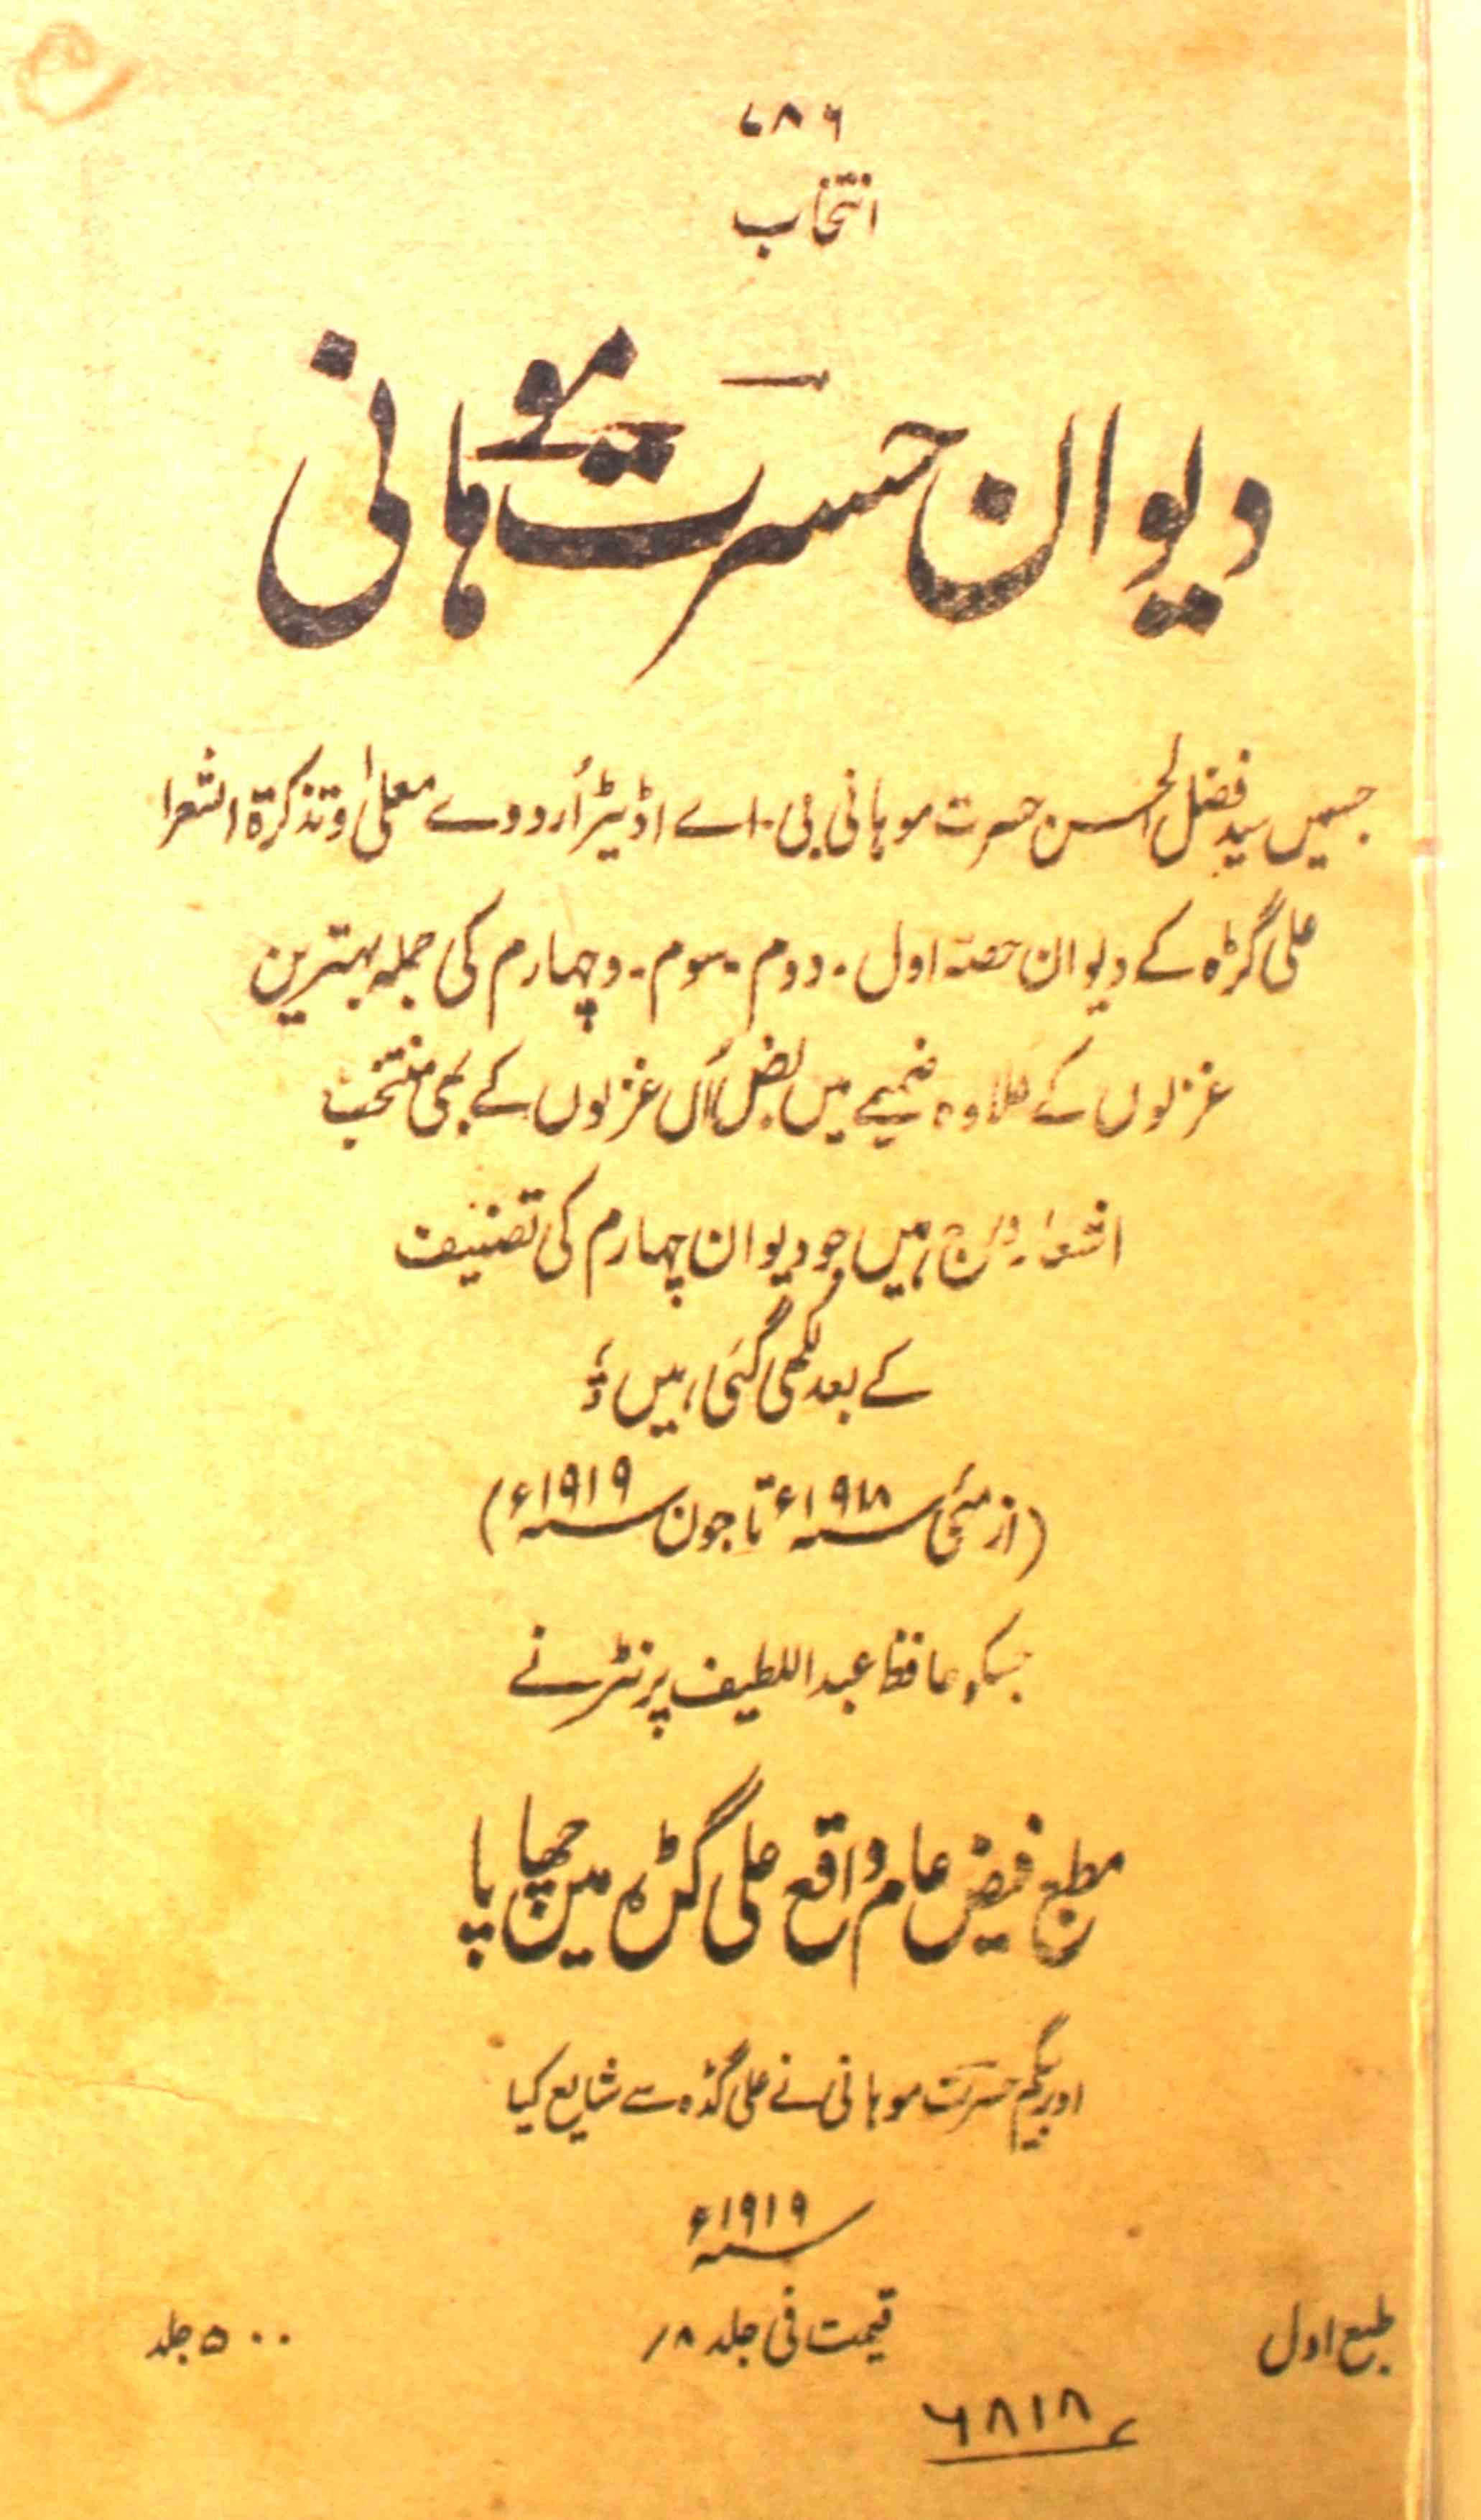 Intikhab-e-Deewan-e-Hasrat Mohani